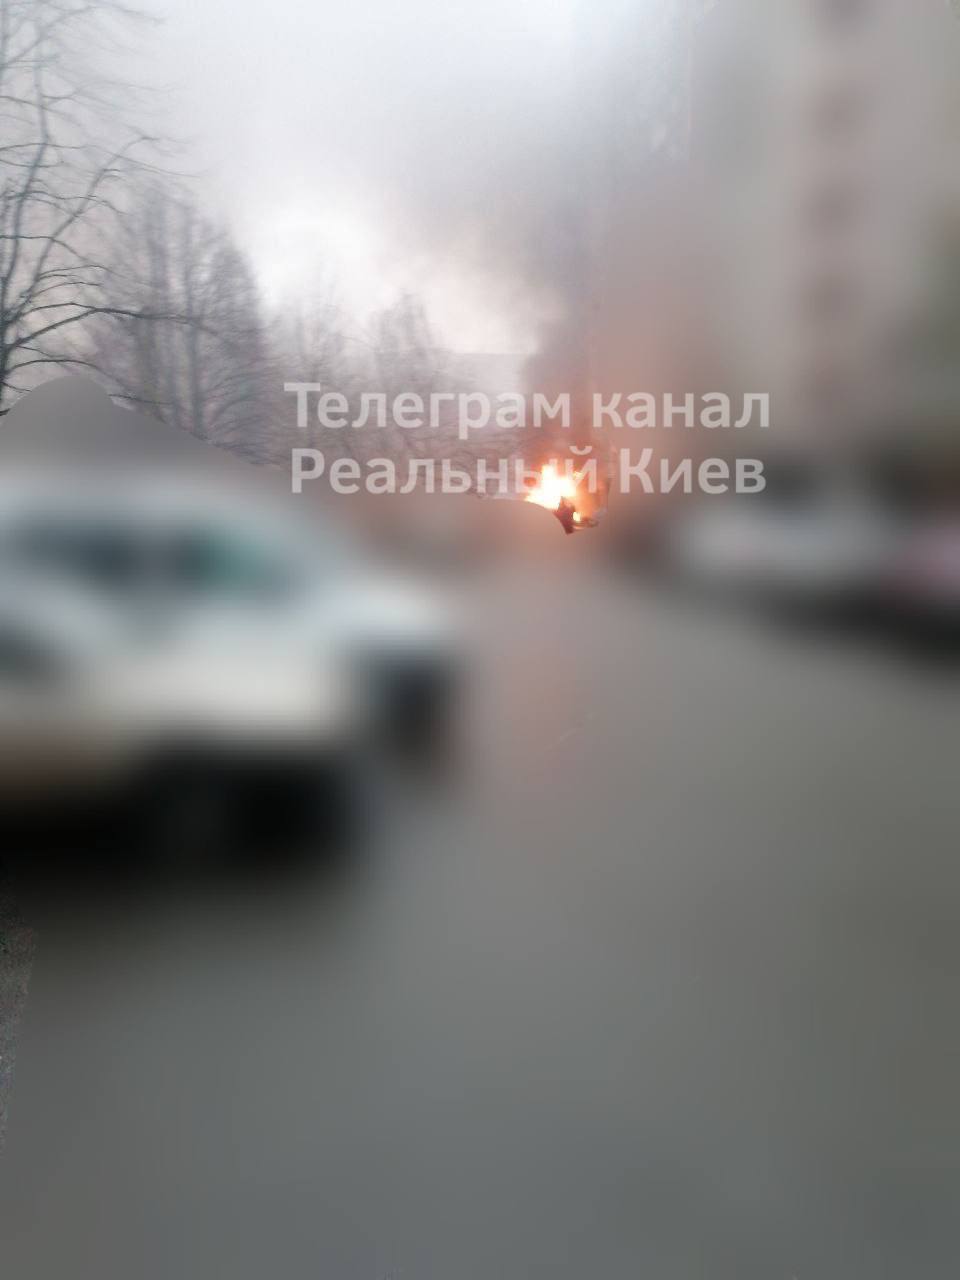 В Броварах Киевской области местные паблики сообщают о падении то ли вертолета, то ли беспилотника